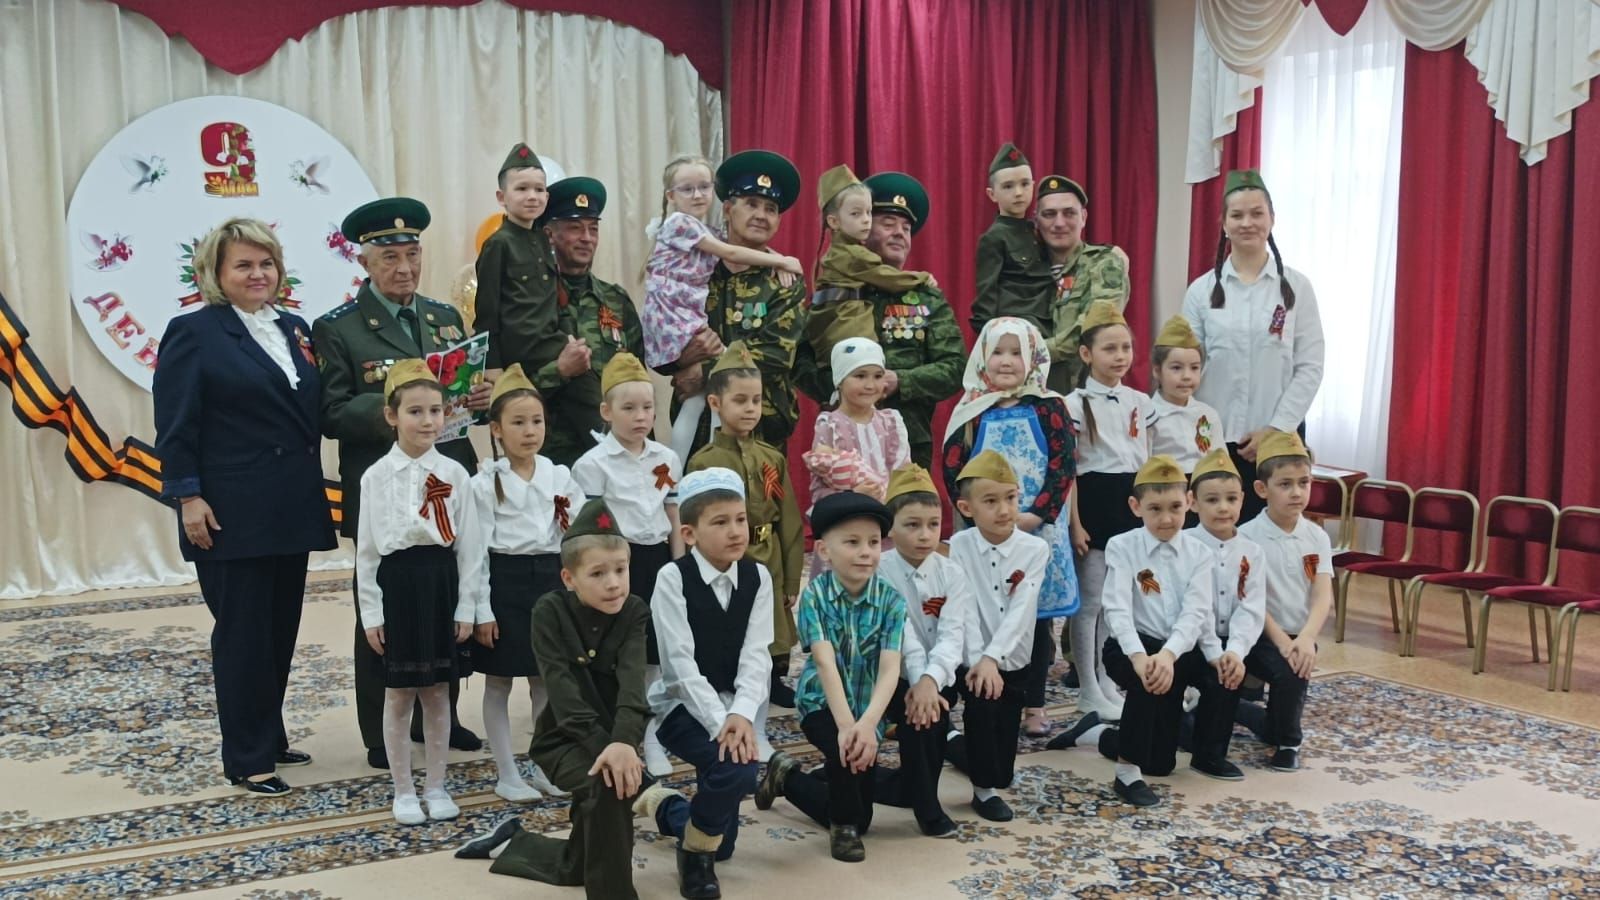 Сегодня в детском саду «Бэлэкэч» прошел концерт-фестиваль военной песни, приуроченный к празднику 9 мая